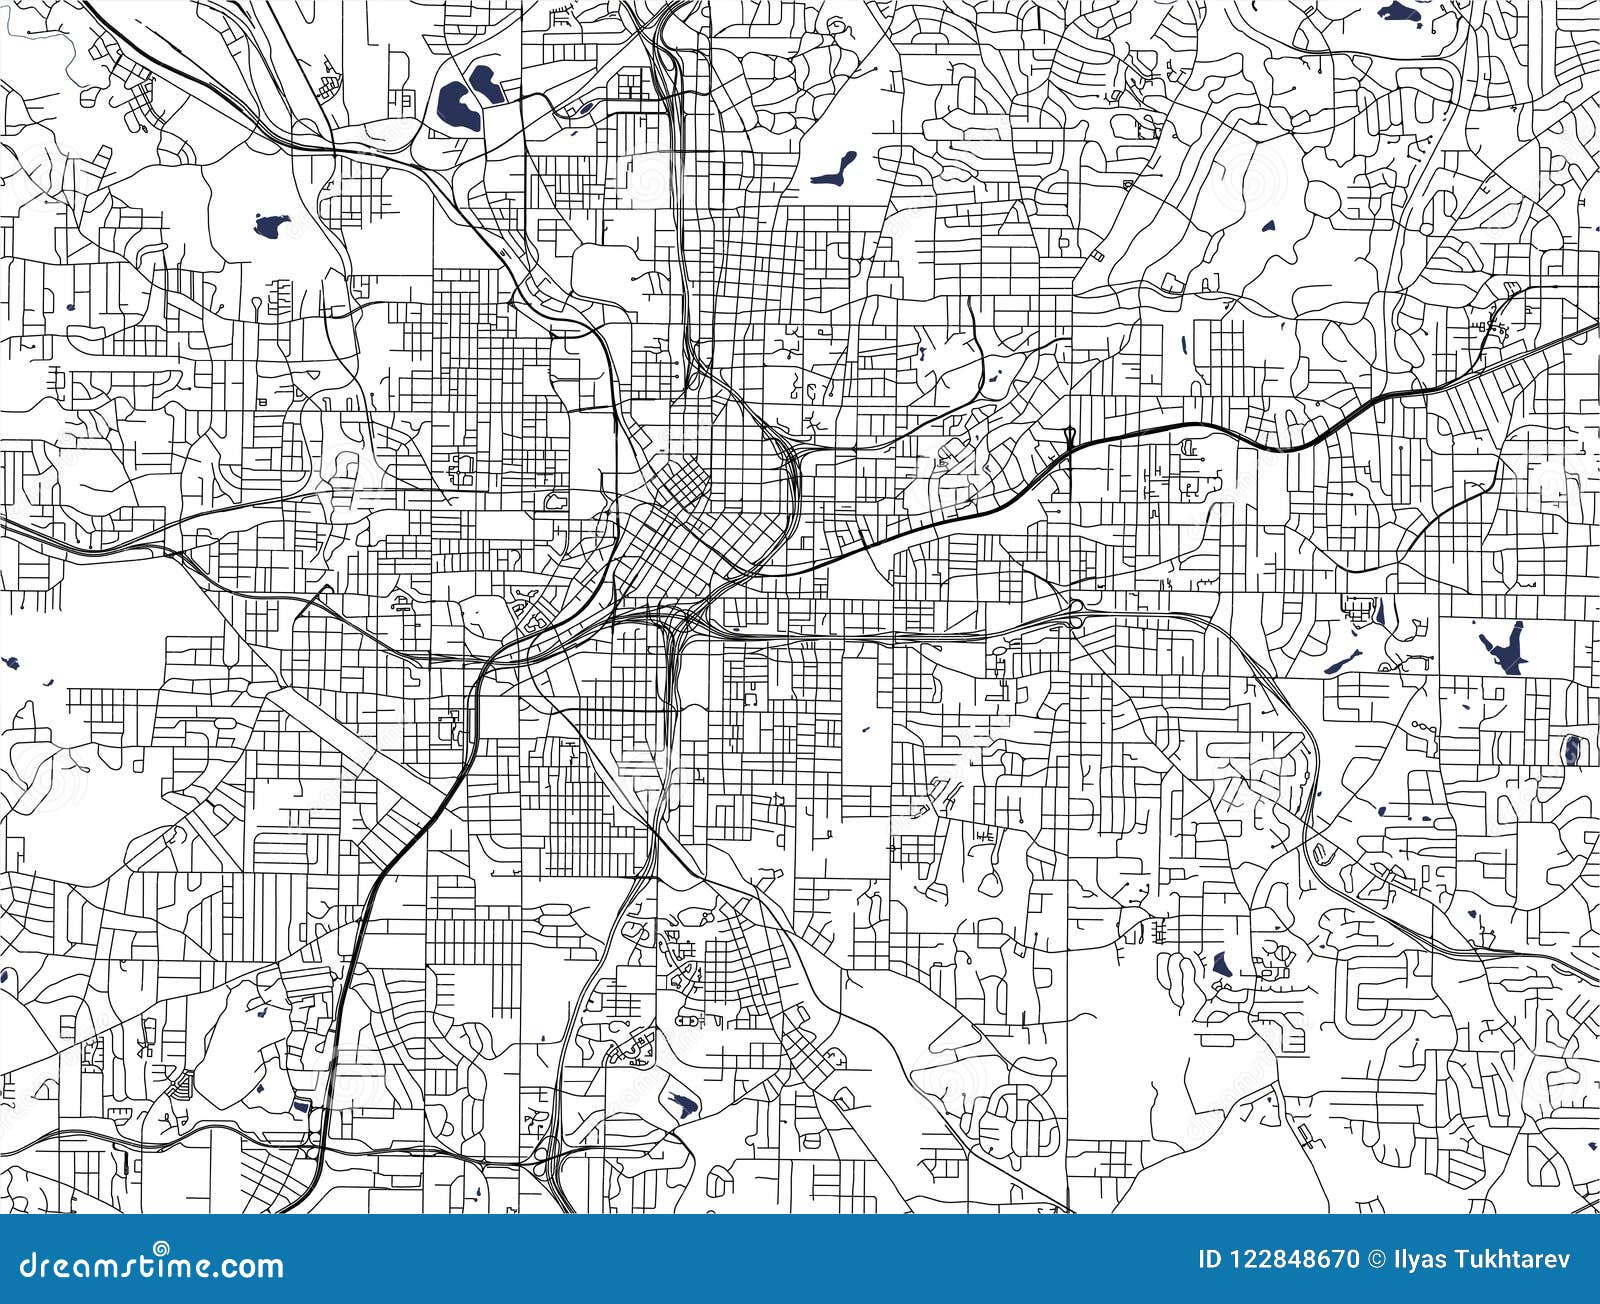 Map Of The City Of Atlanta, USA Cartoon Vector | CartoonDealer.com ...